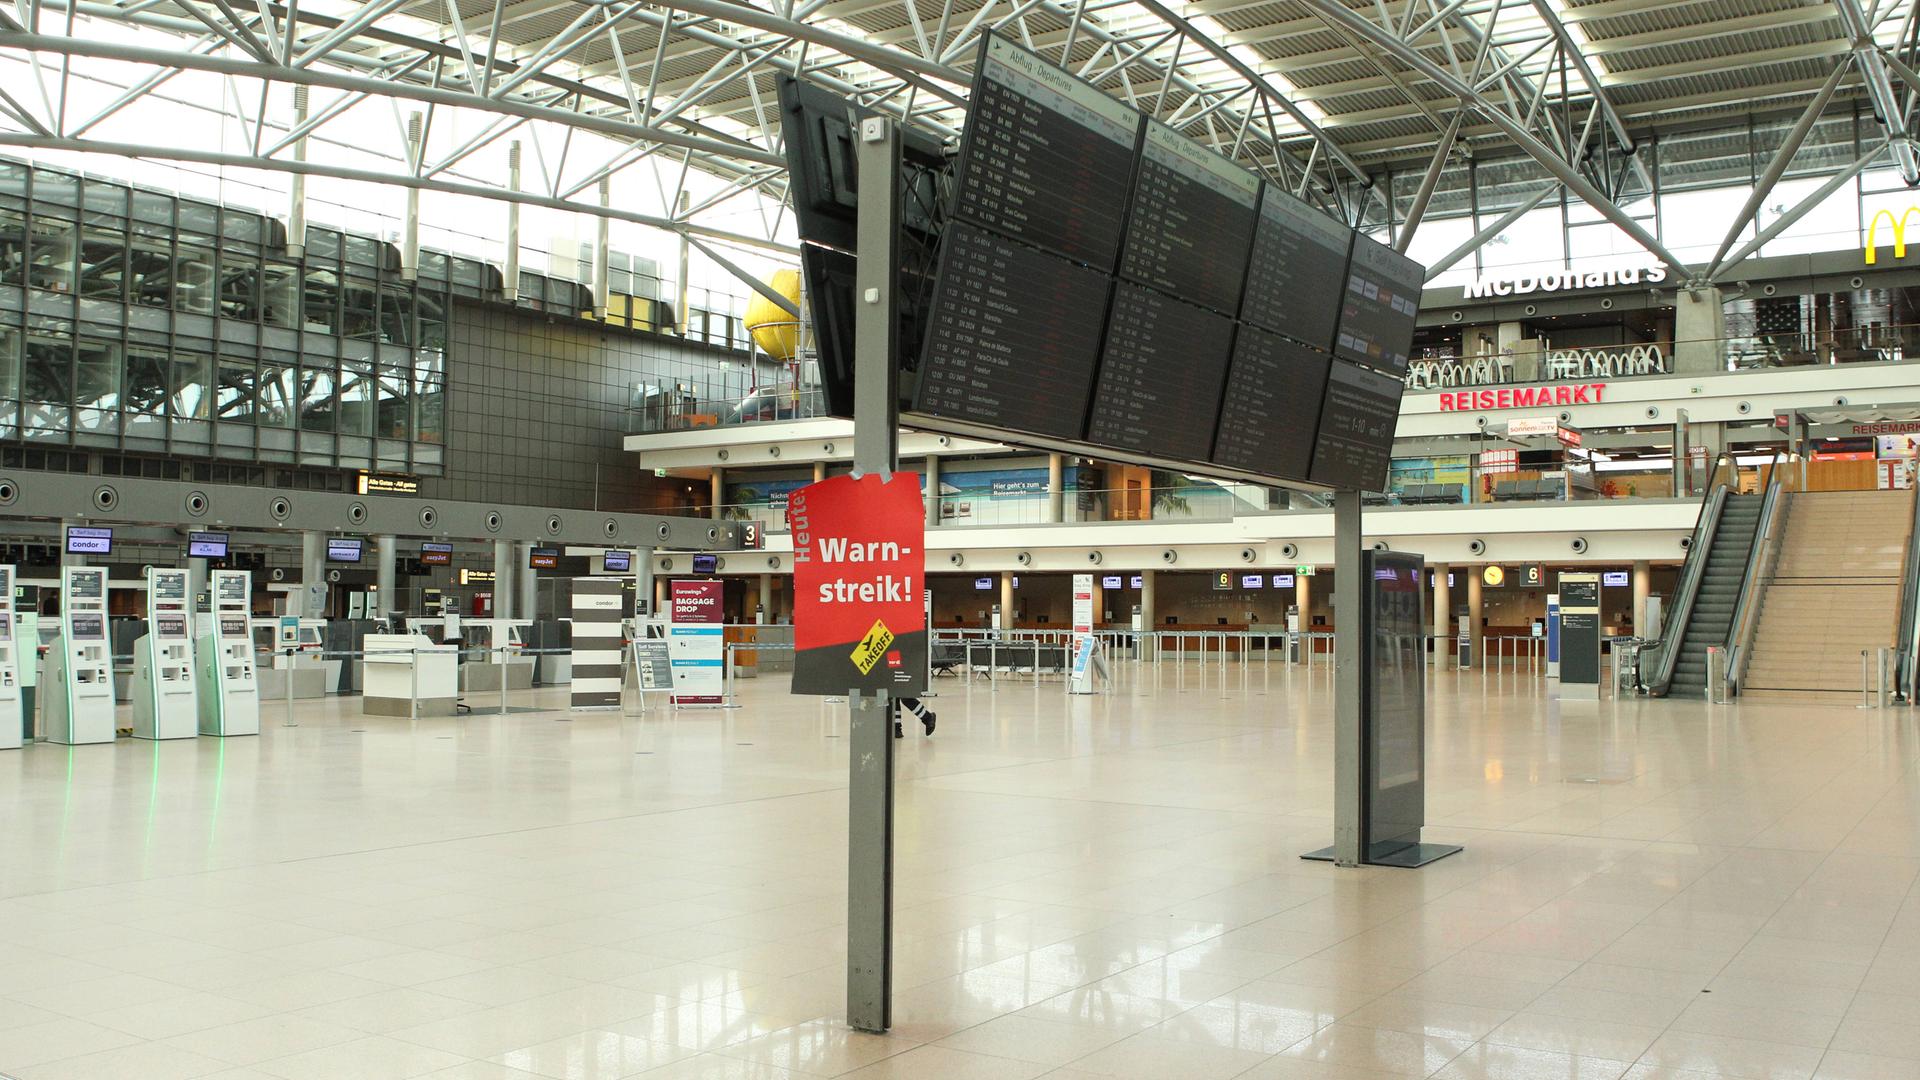 Menschenleeres Terminal 1 im Flughafen Hamburg. An der Anzeige für Ankünfte und Abflüge ist ein Plakat mit der Aufschrift "Warnstreik" angebracht.